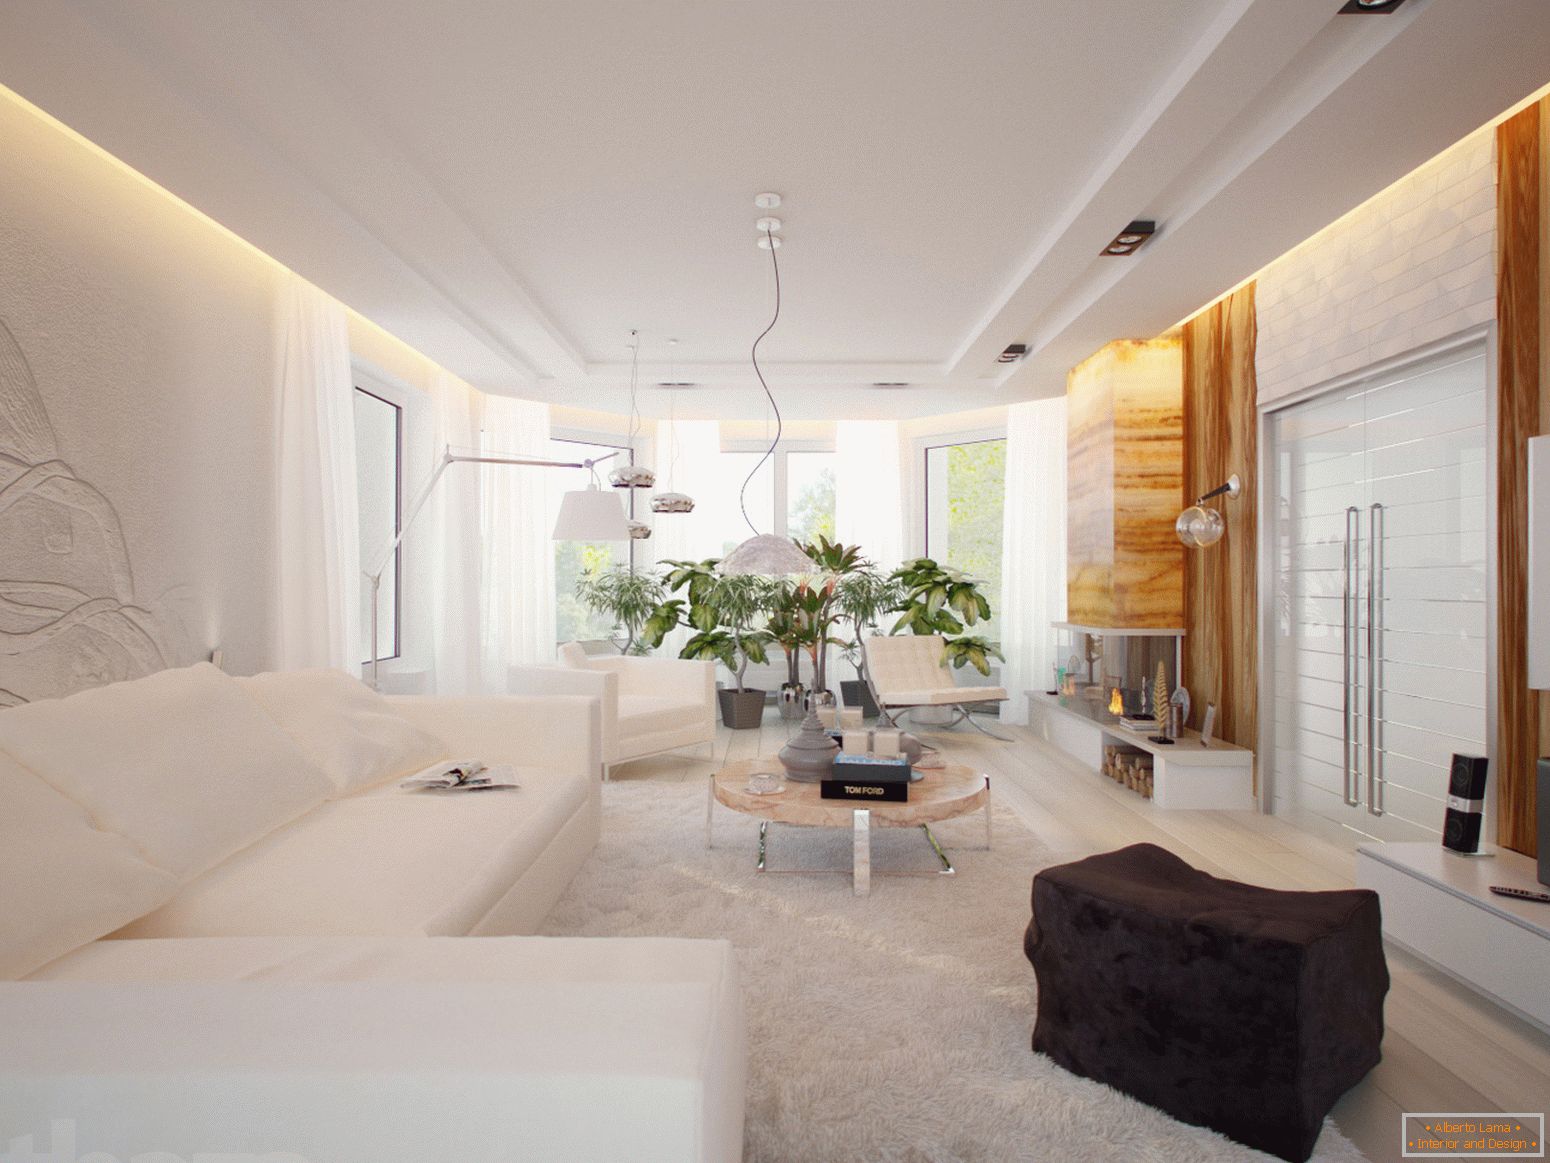 Una spaziosa e luminosa camera per gli ospiti in stile minimalista è un eccellente esempio di arredamento ben selezionato.